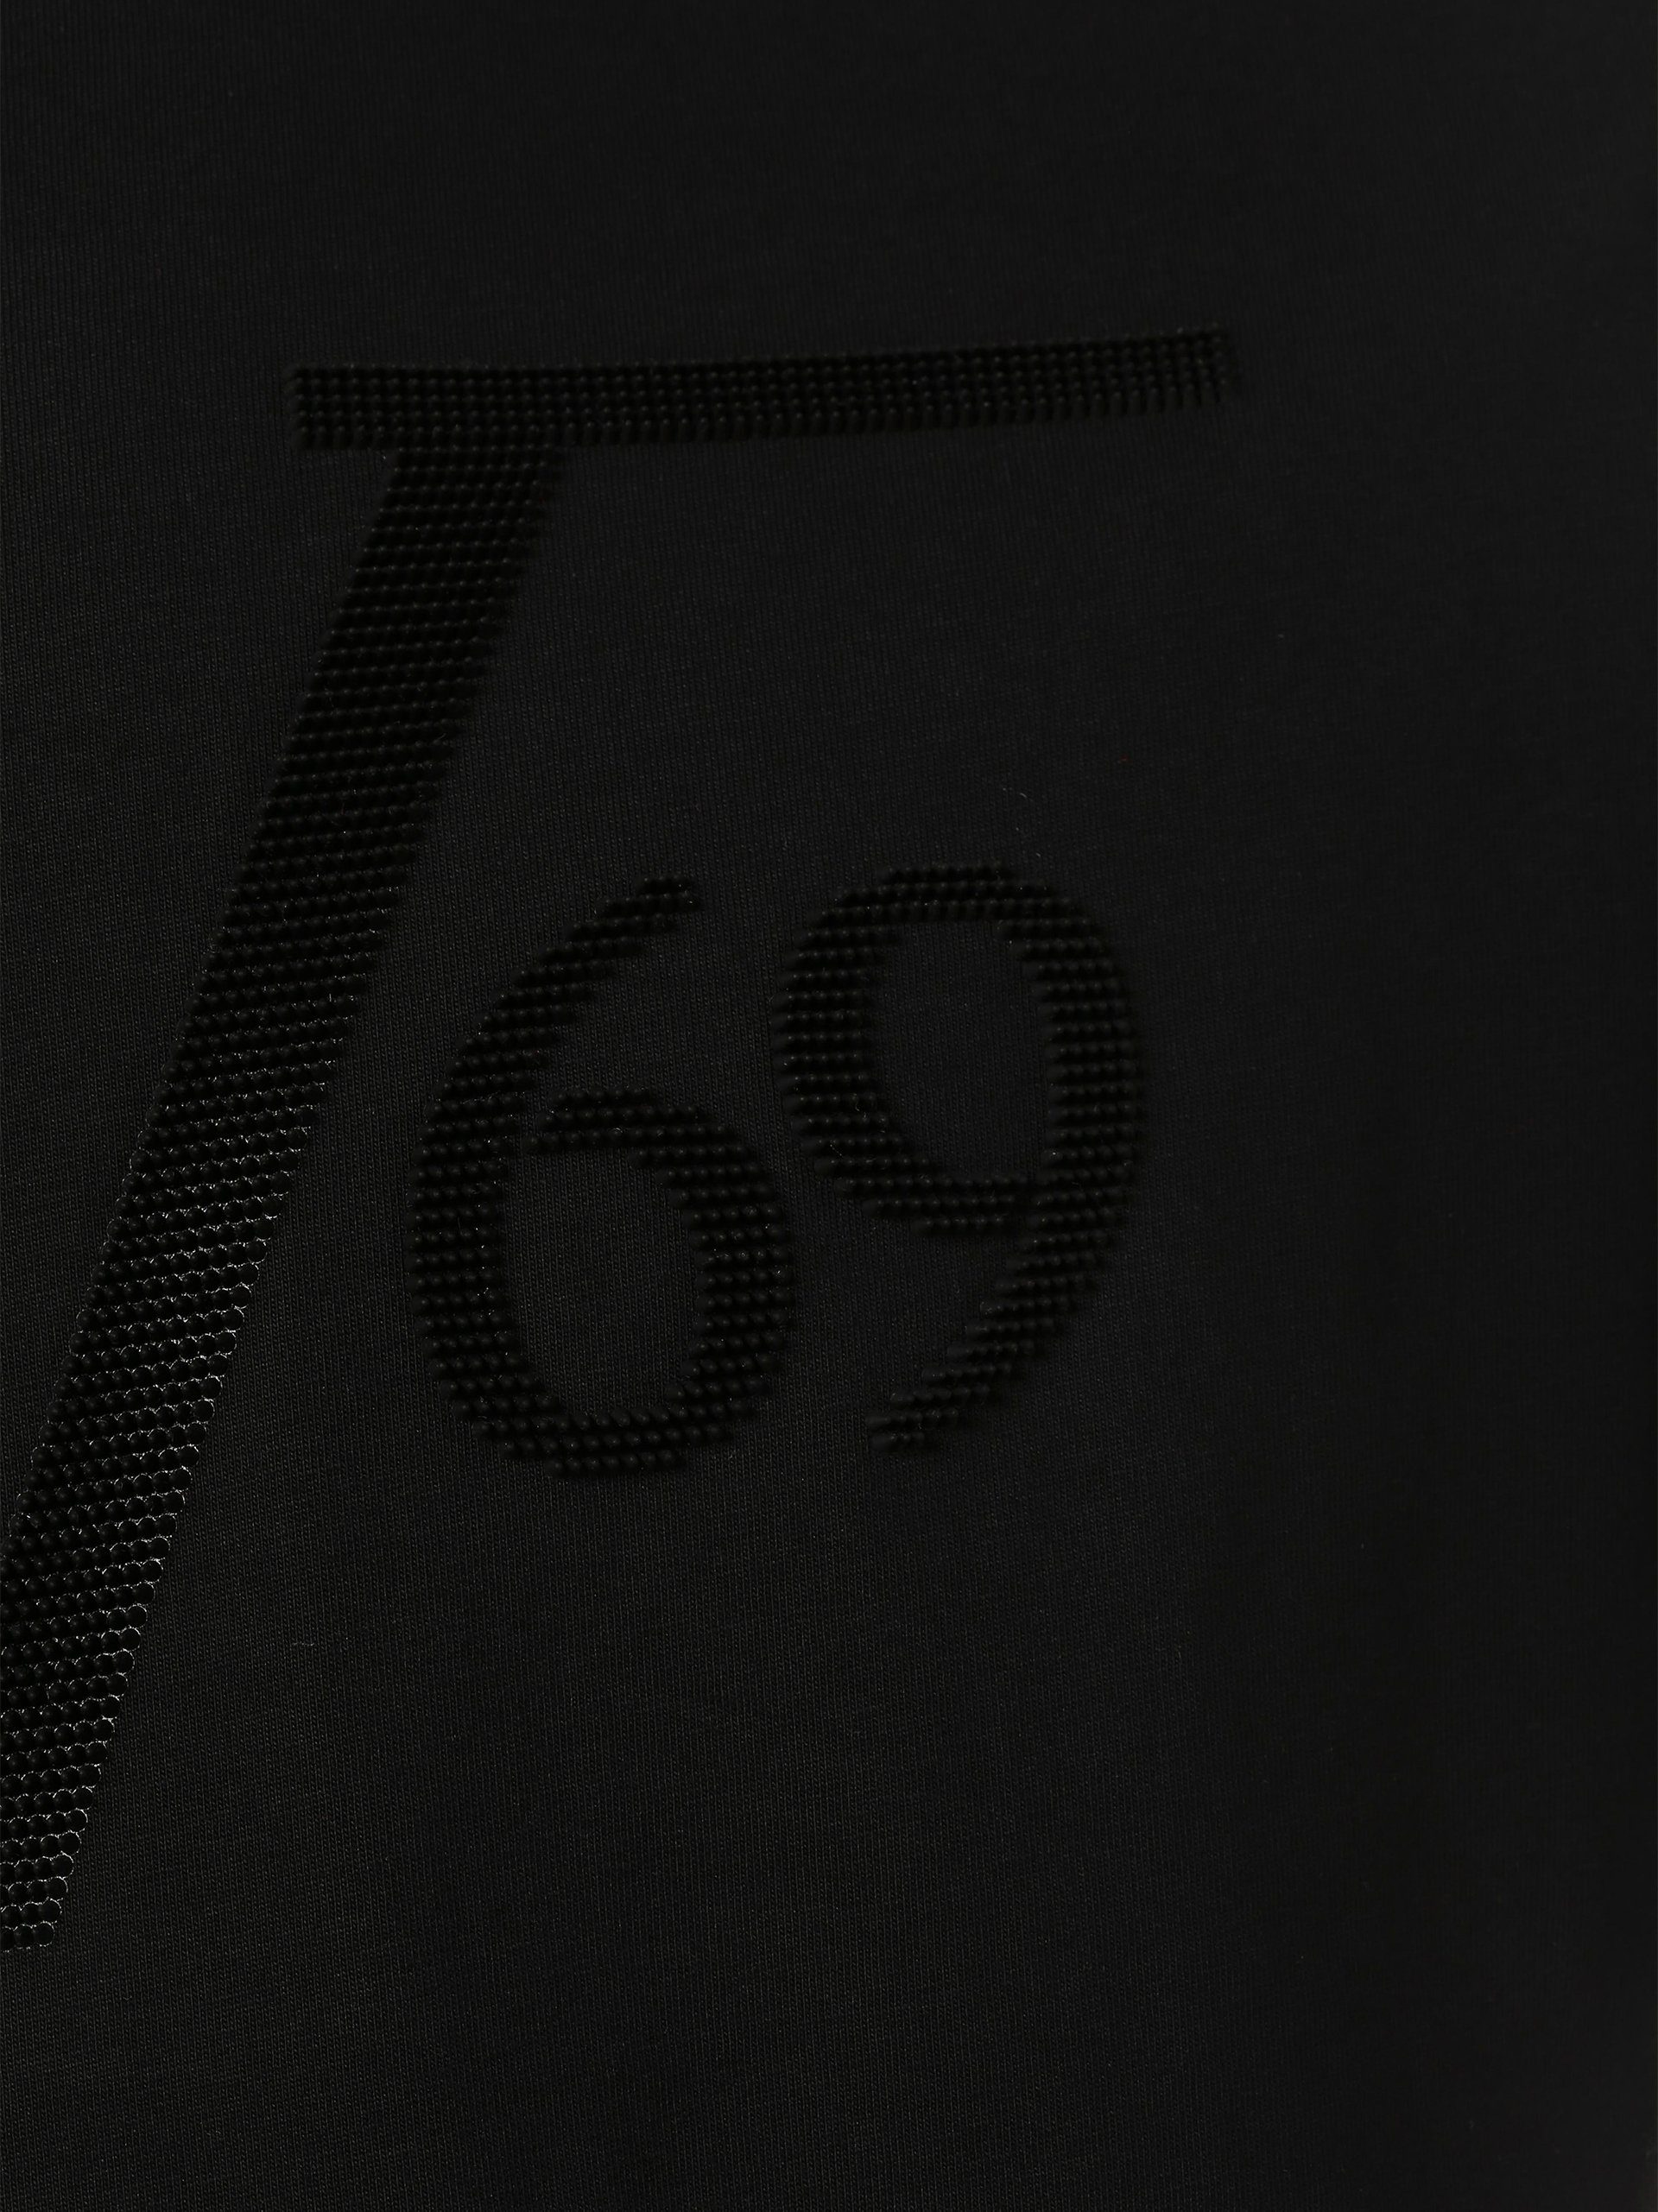 19V69 Italia by Versace schwarz Italia Nilo 19V69 T-Shirt